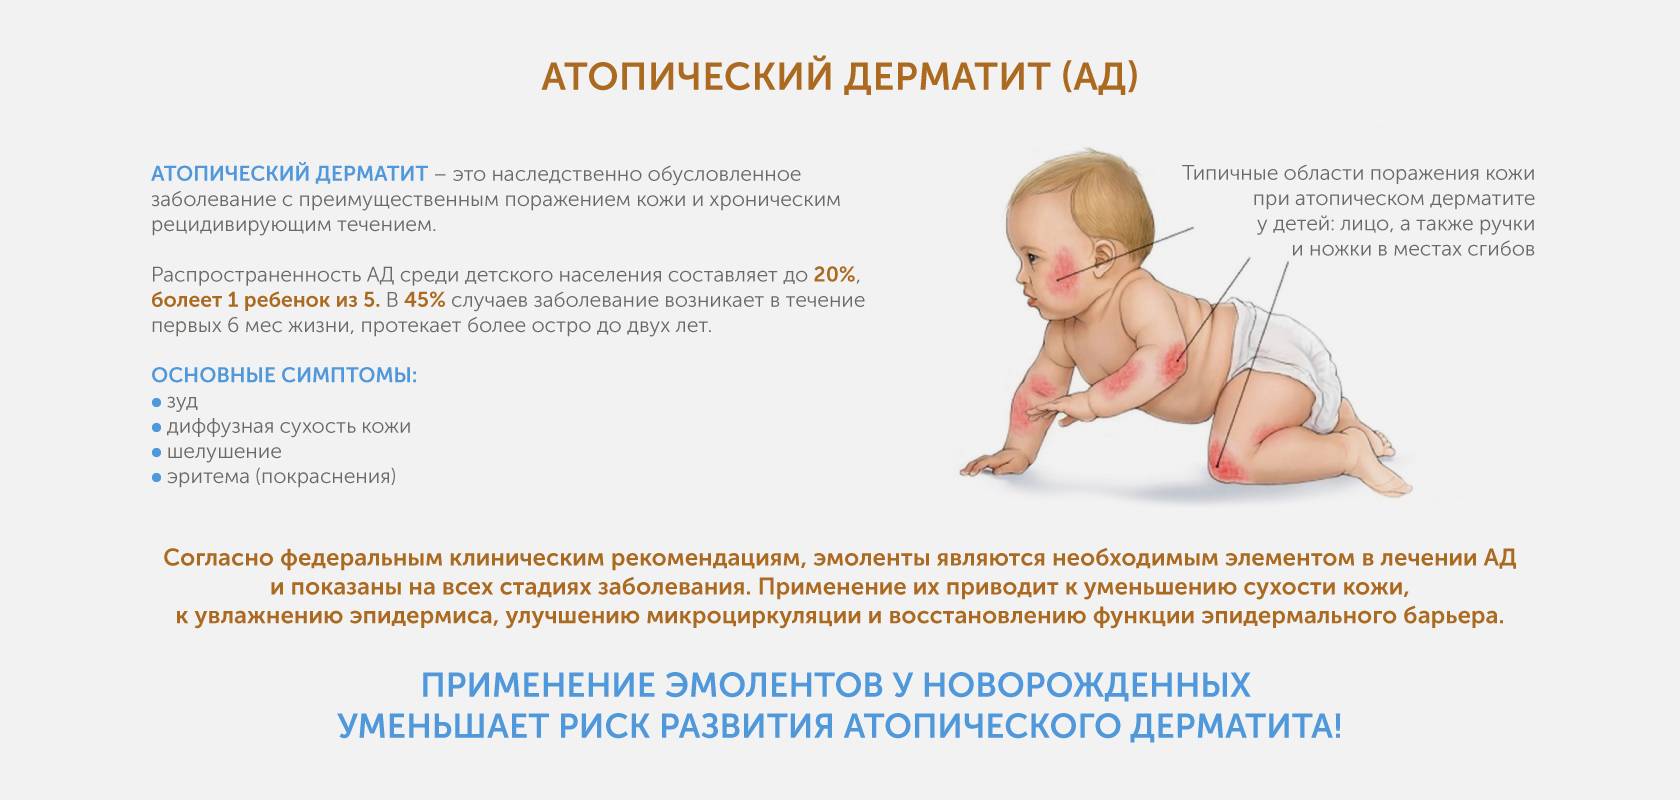 Малышу 3 месяца форум. Атопический дерматит клинические рекомендации 2020. Атопический дерматит причины у детей 4 месяца. Симптомы атопический дерматит у ребёнка 6 месяцев. Дерматит у 4 месячного ребенка.